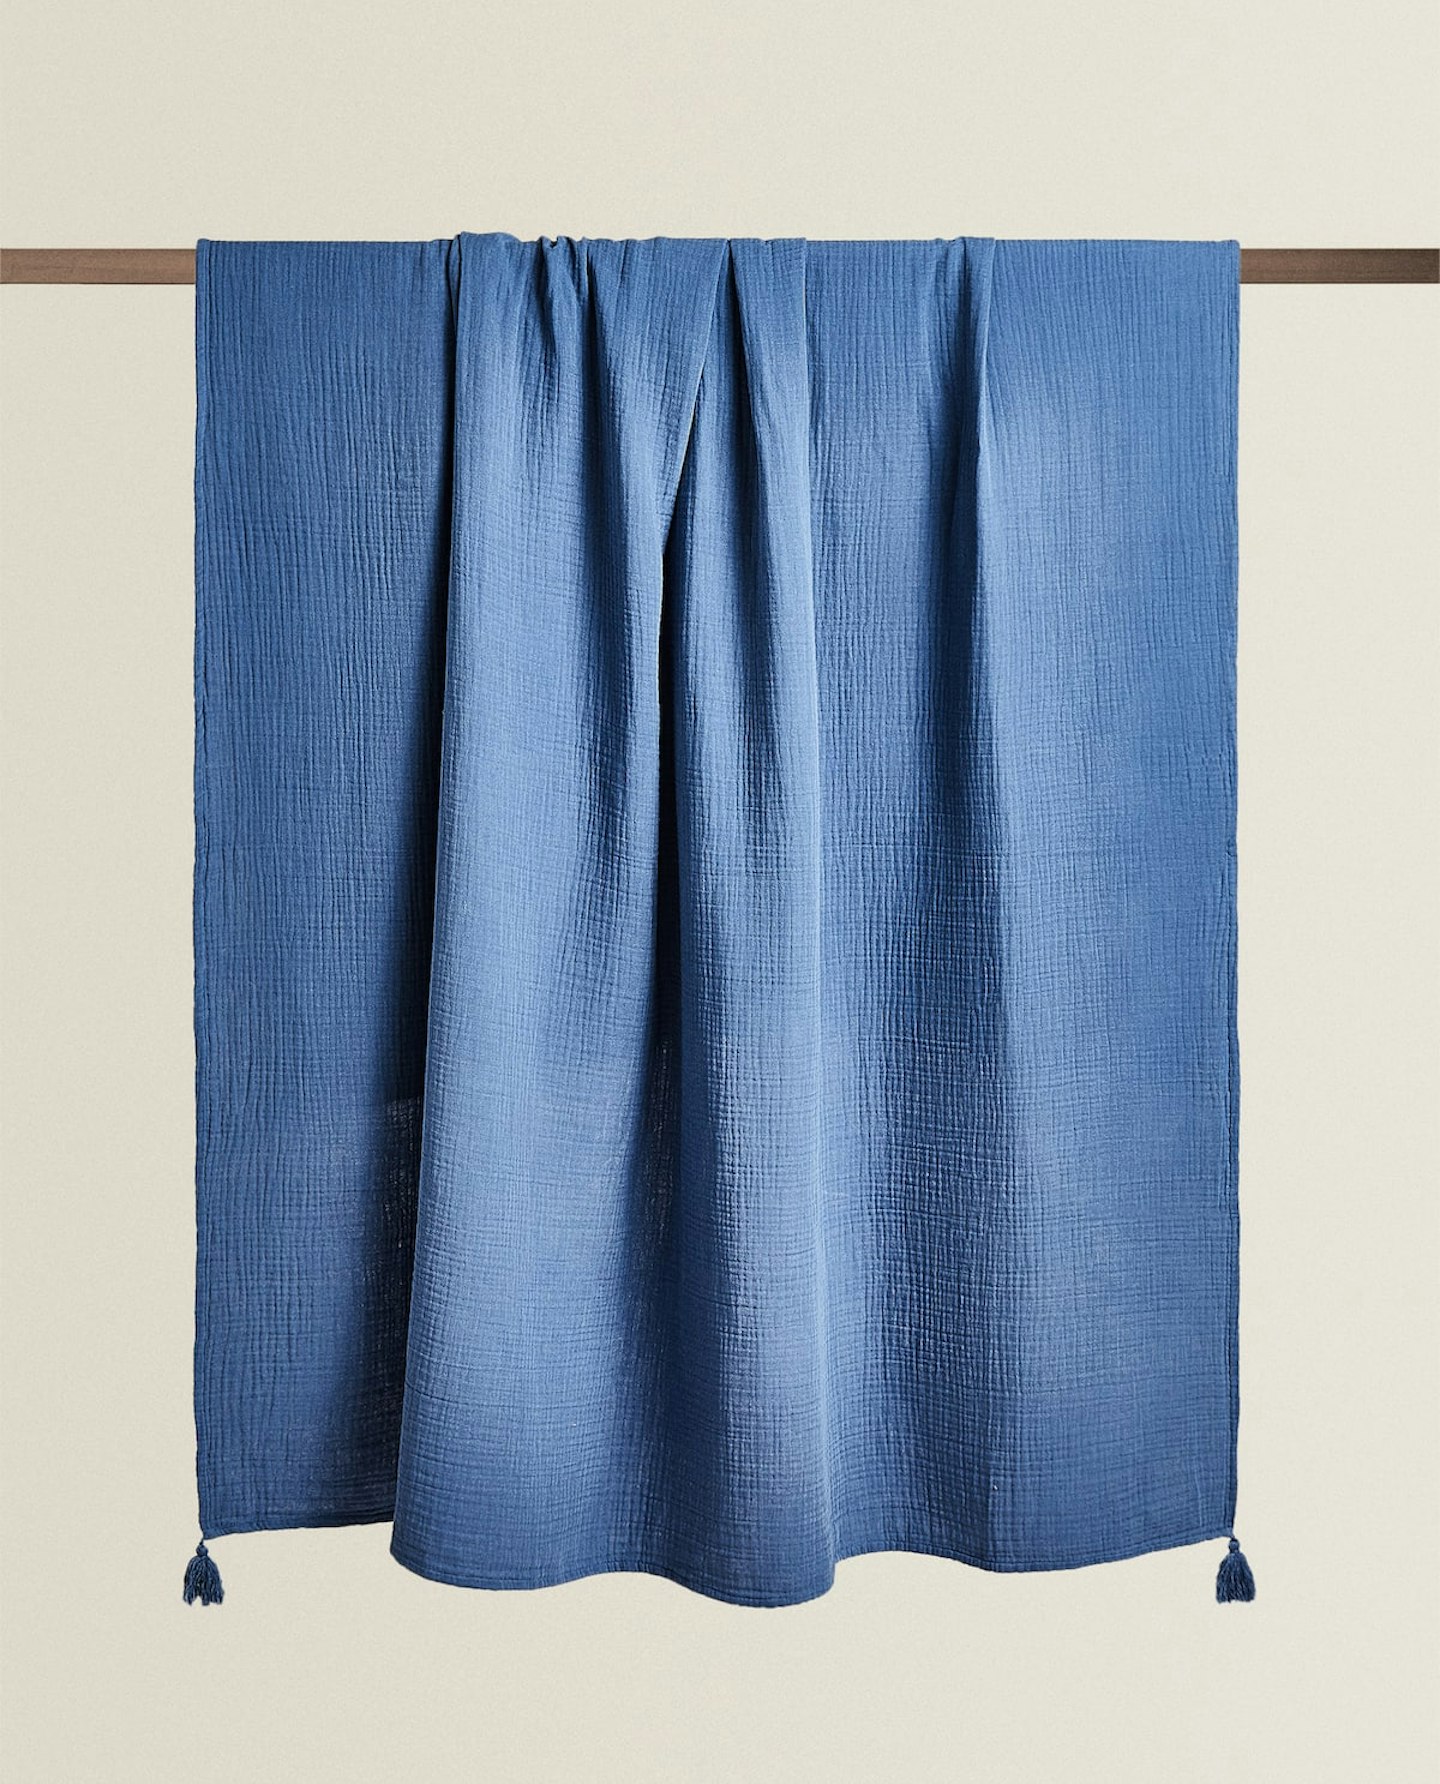 Zara, Muslin Blanket With Tassels, £29.99